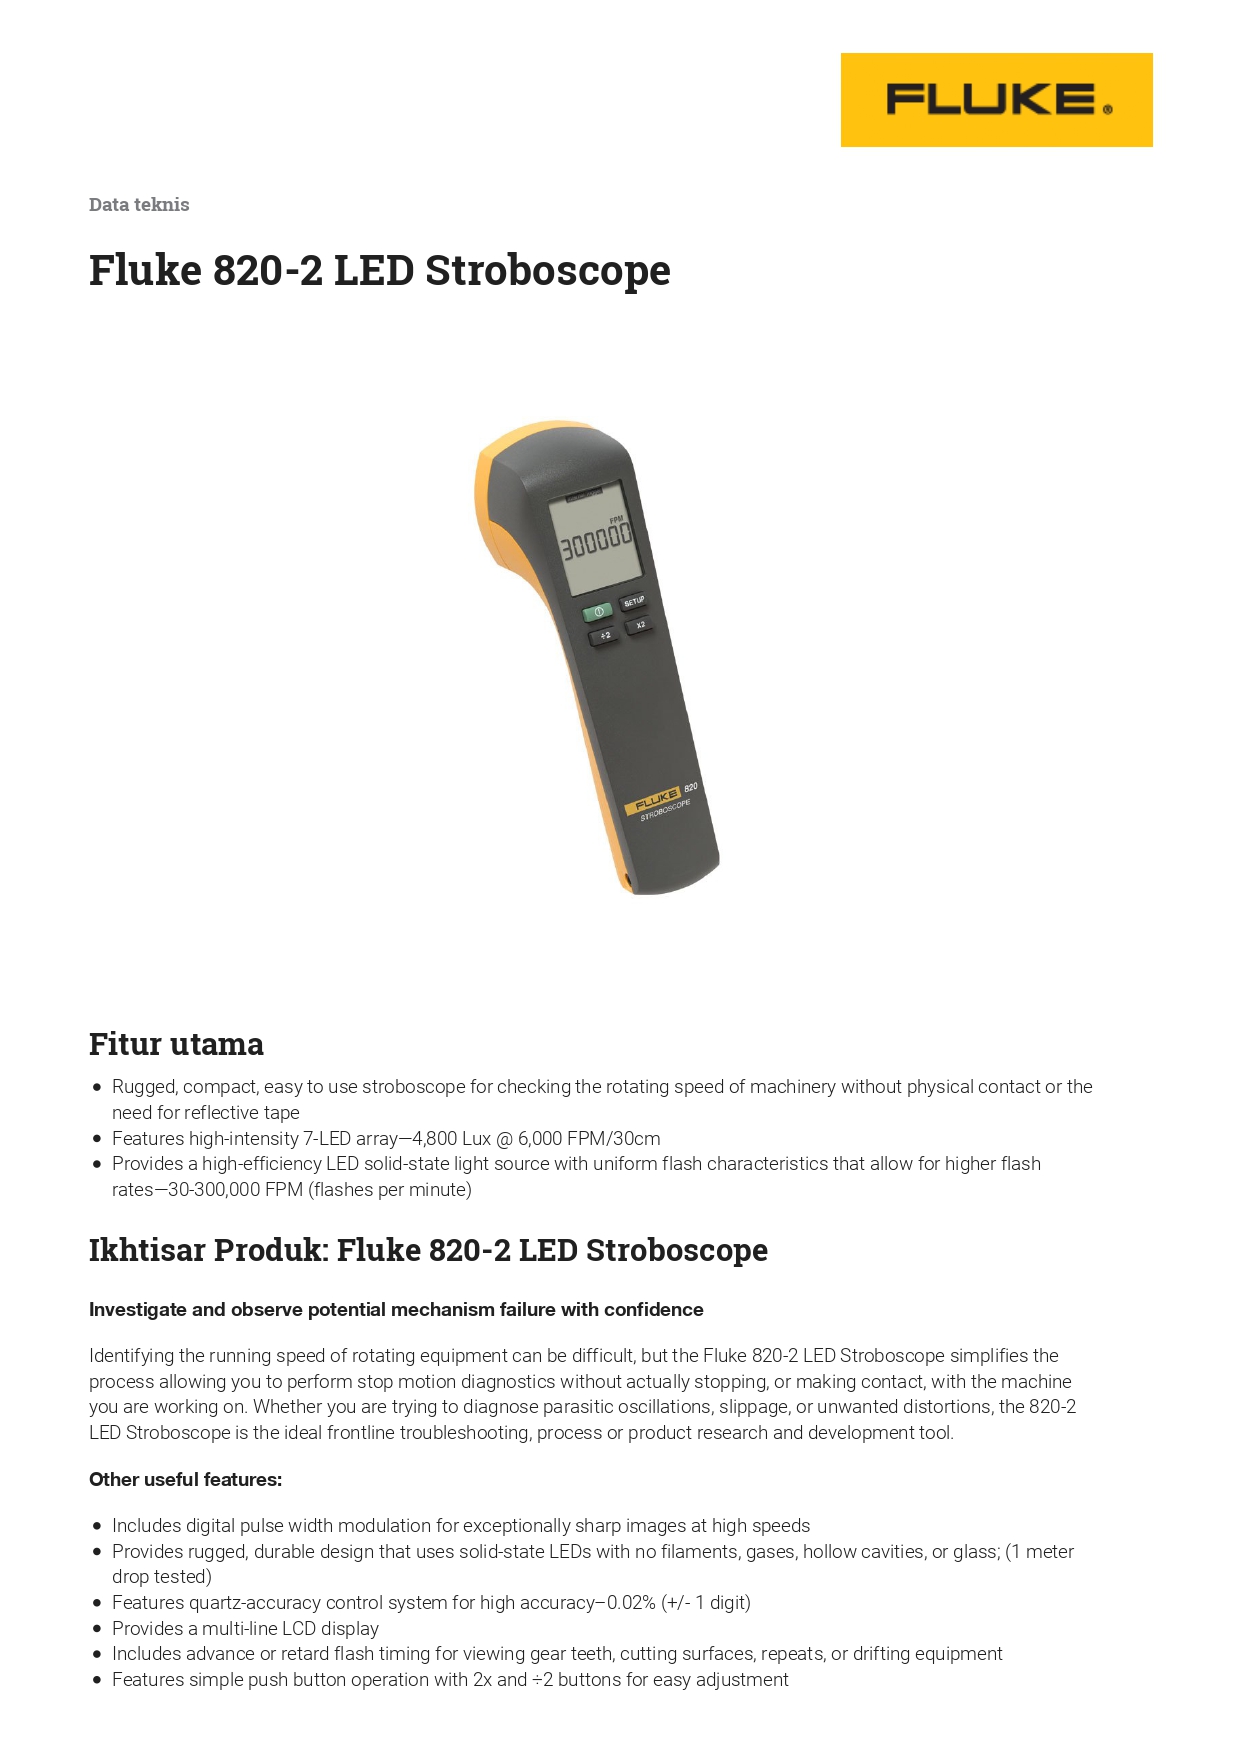 Stroboscope, Fluke 820-2 LED Stroboscope